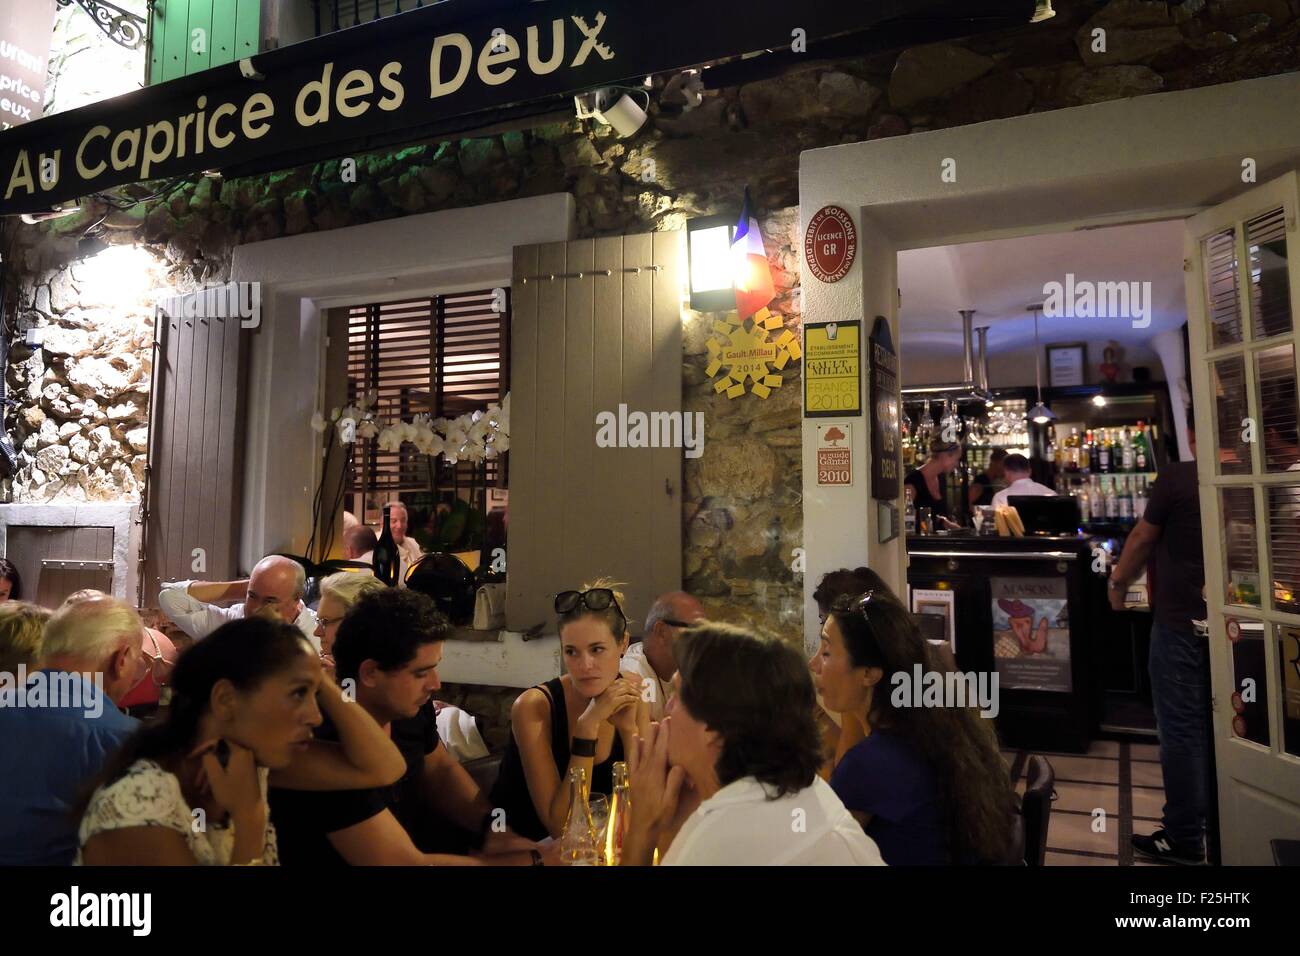 France, Var, Saint-Tropez, restaurant Au caprice des deux Stock Photo -  Alamy